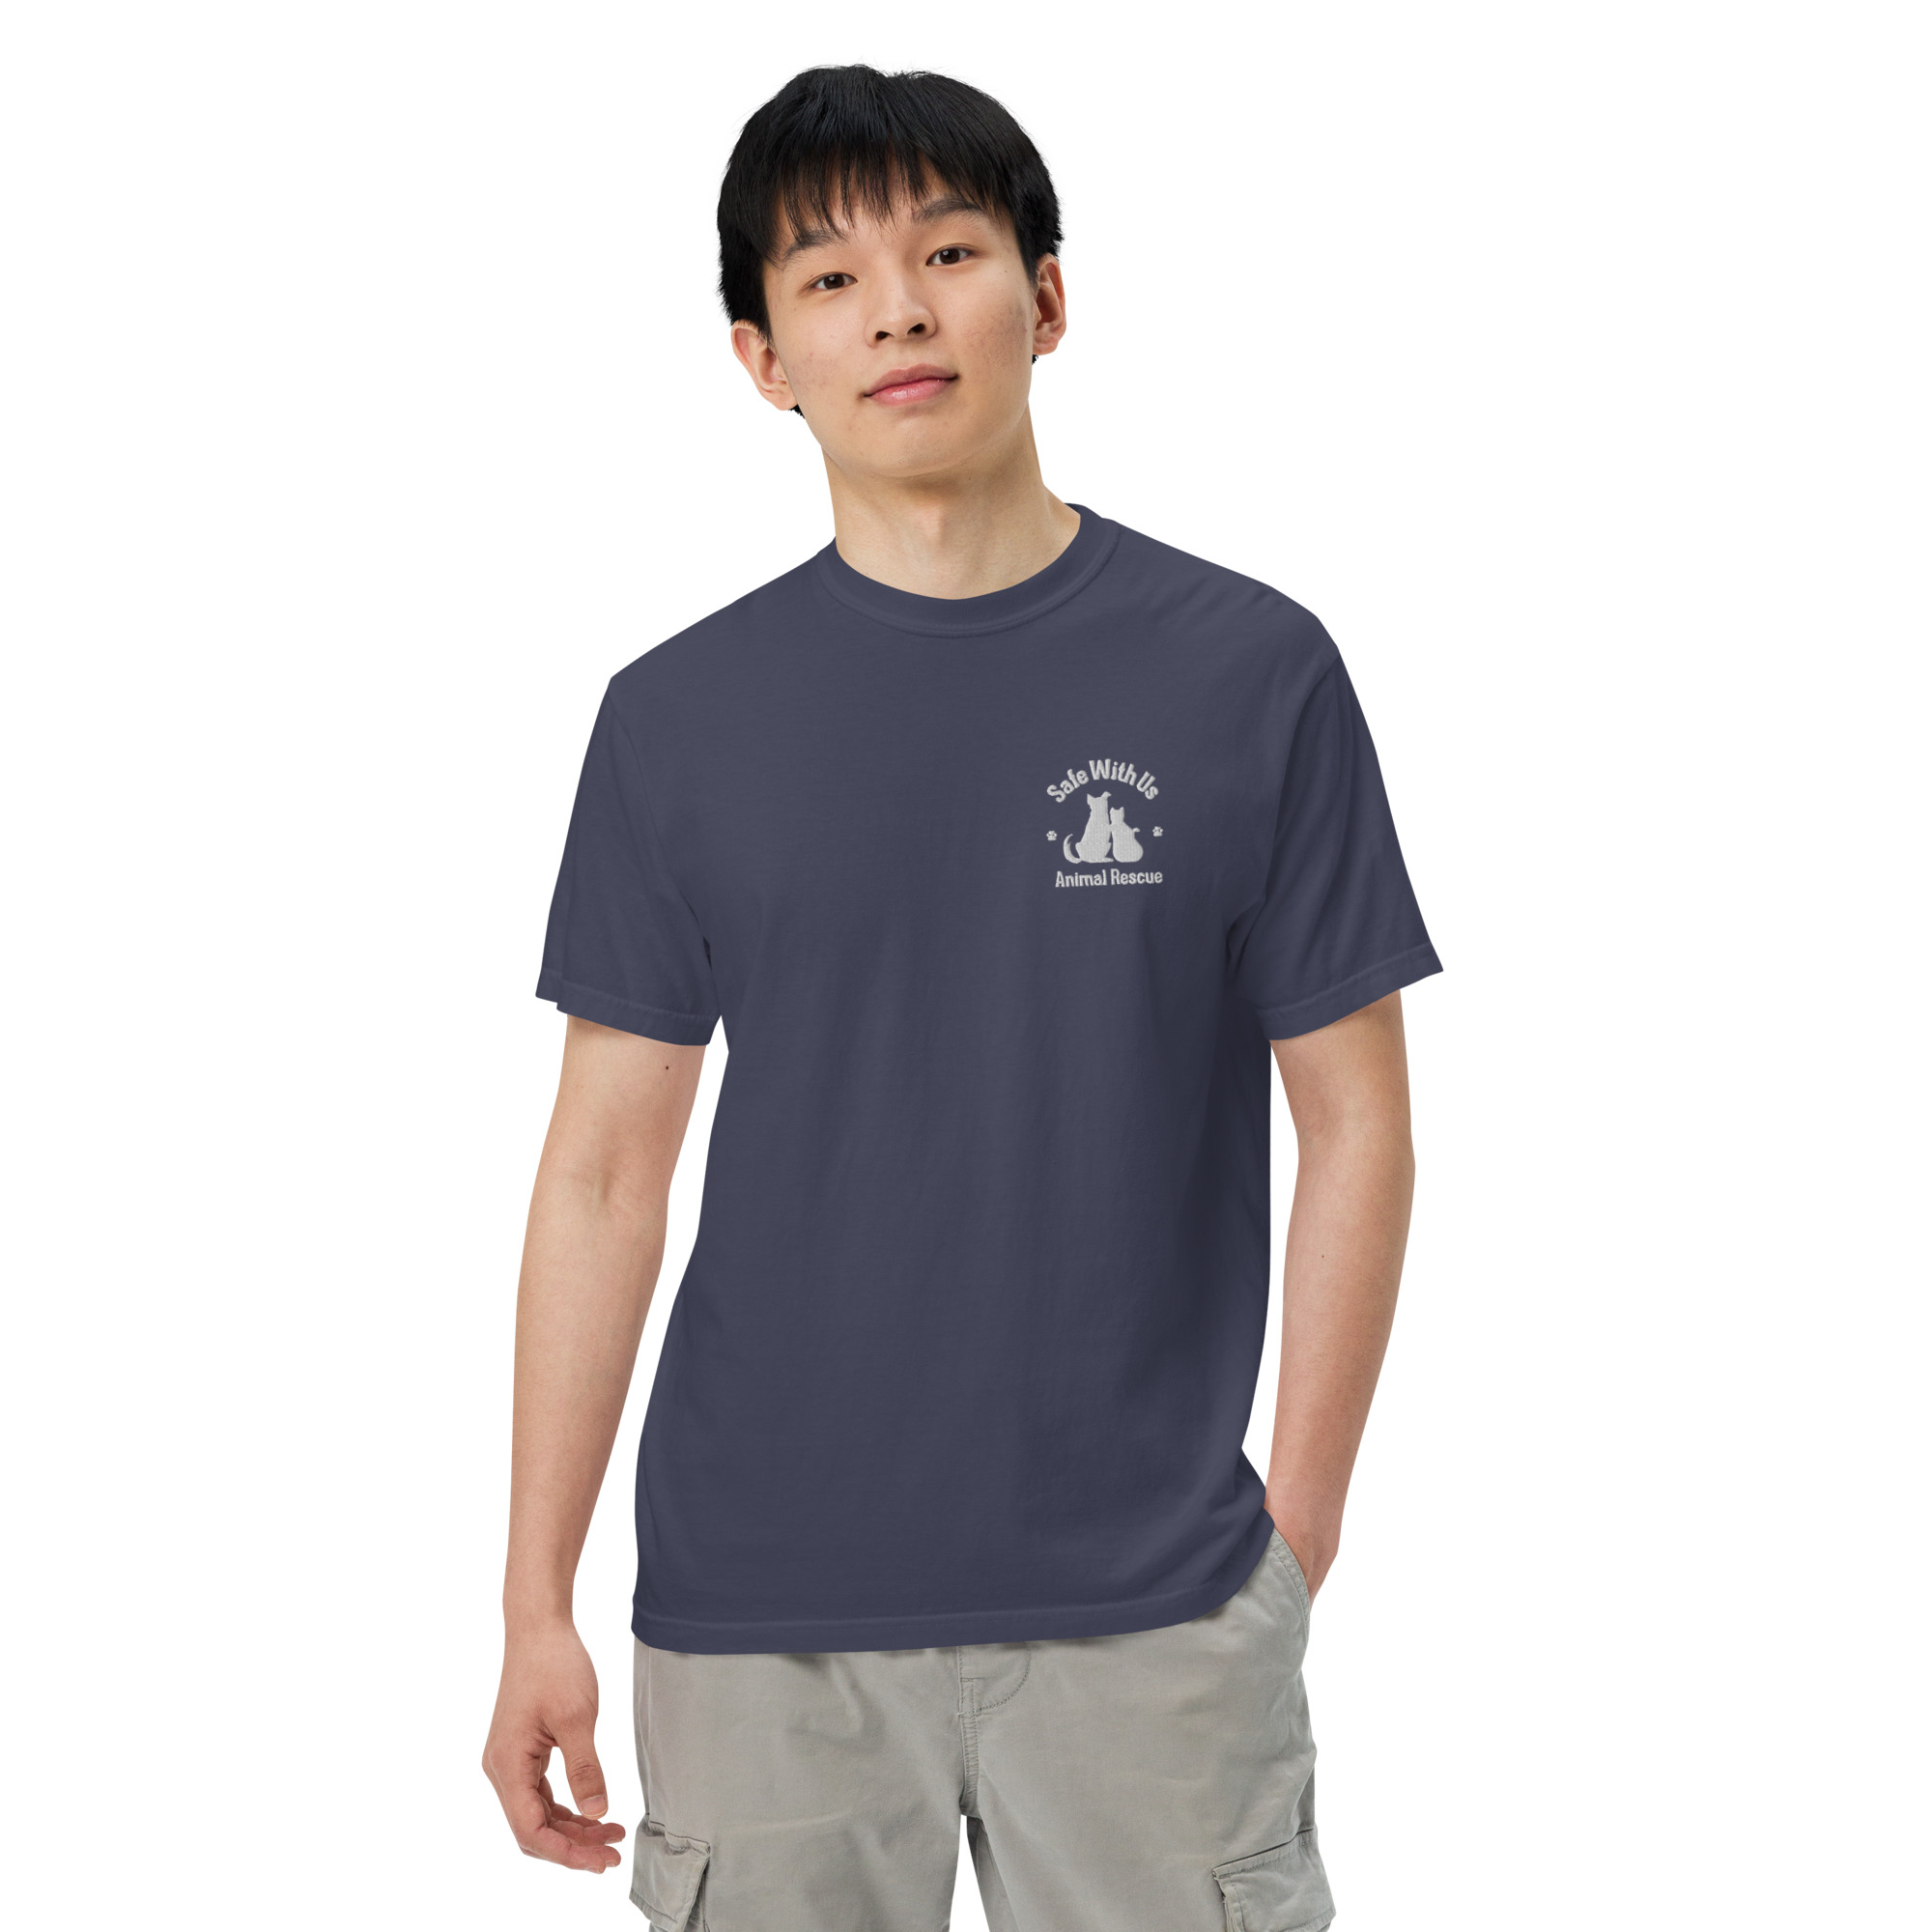 mens-garment-dyed-heavyweight-t-shirt-true-navy-front-2-6415fedc25892-1.jpg